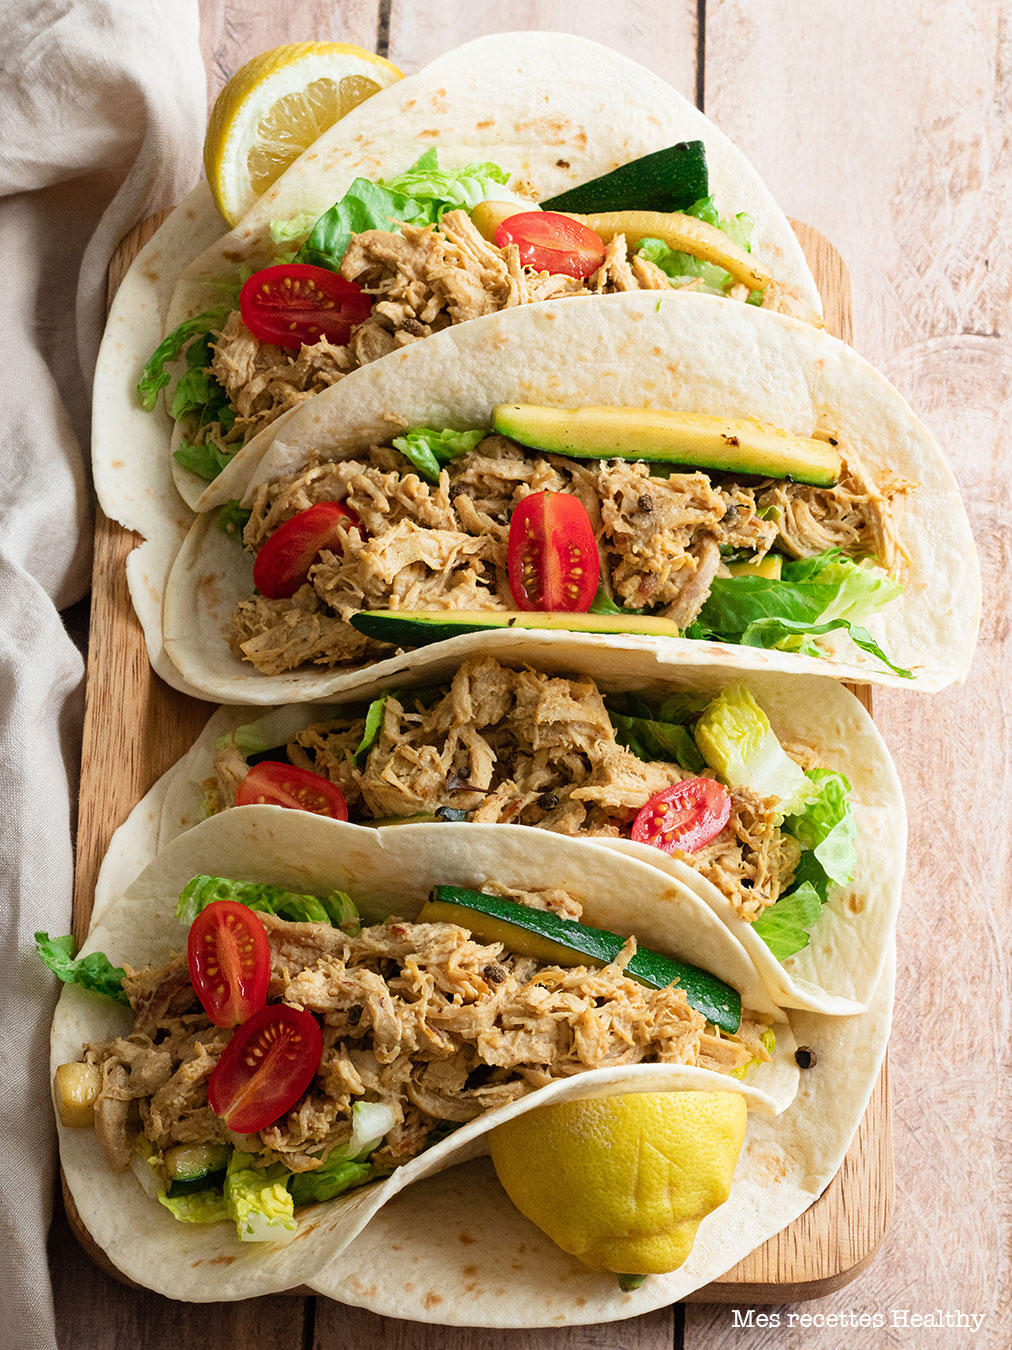 recette healthy-tacos au poulet-poulet effiloché-biere-moutarde-salade-wrap-Tacos au poulet effiloché à la bière et moutarde aux légumes